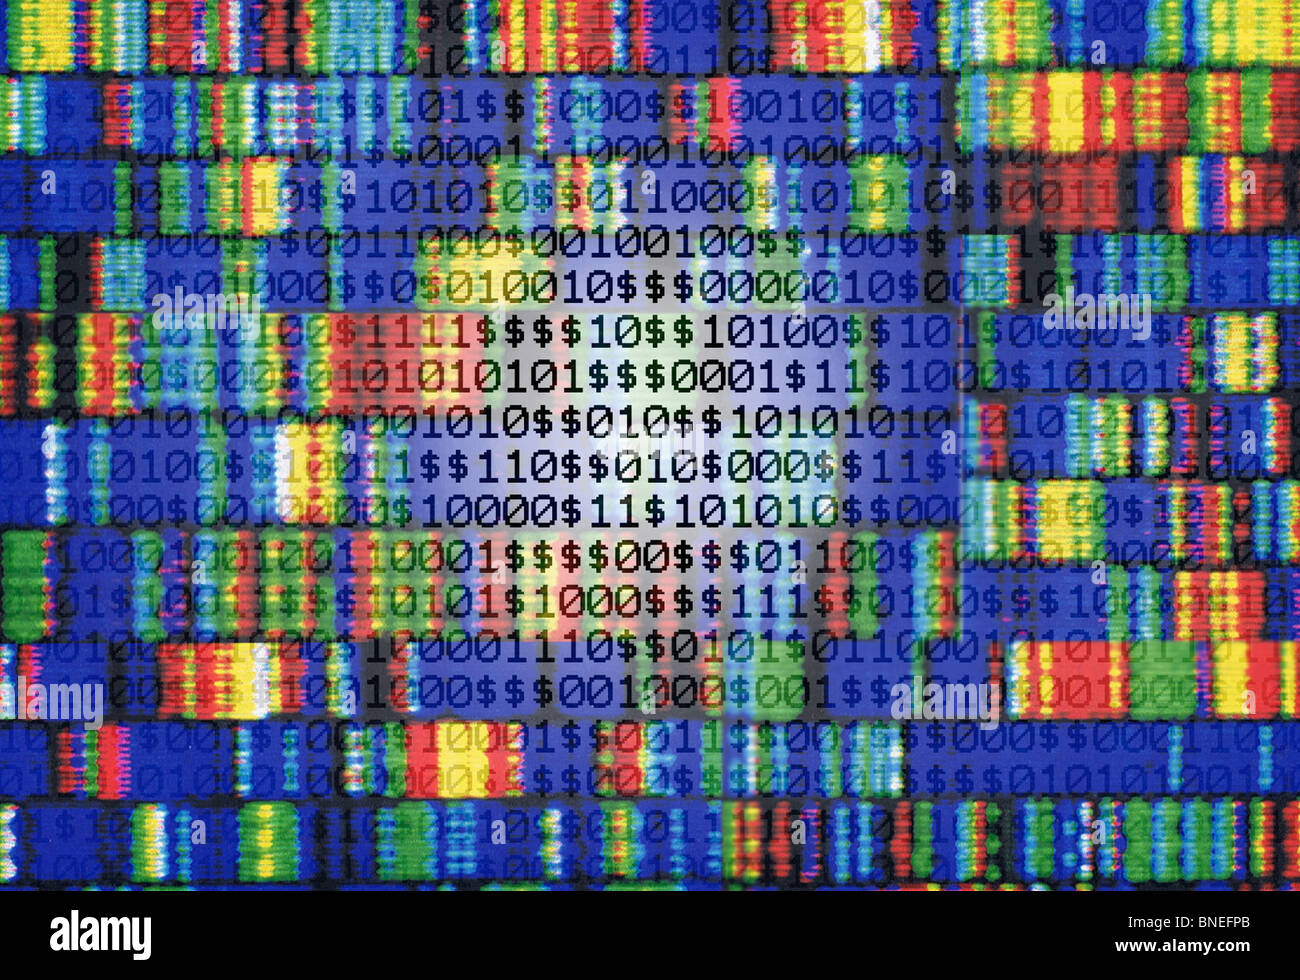 Genotipo, gen, la ingeniería genética, la secuencia de ADN Foto de stock